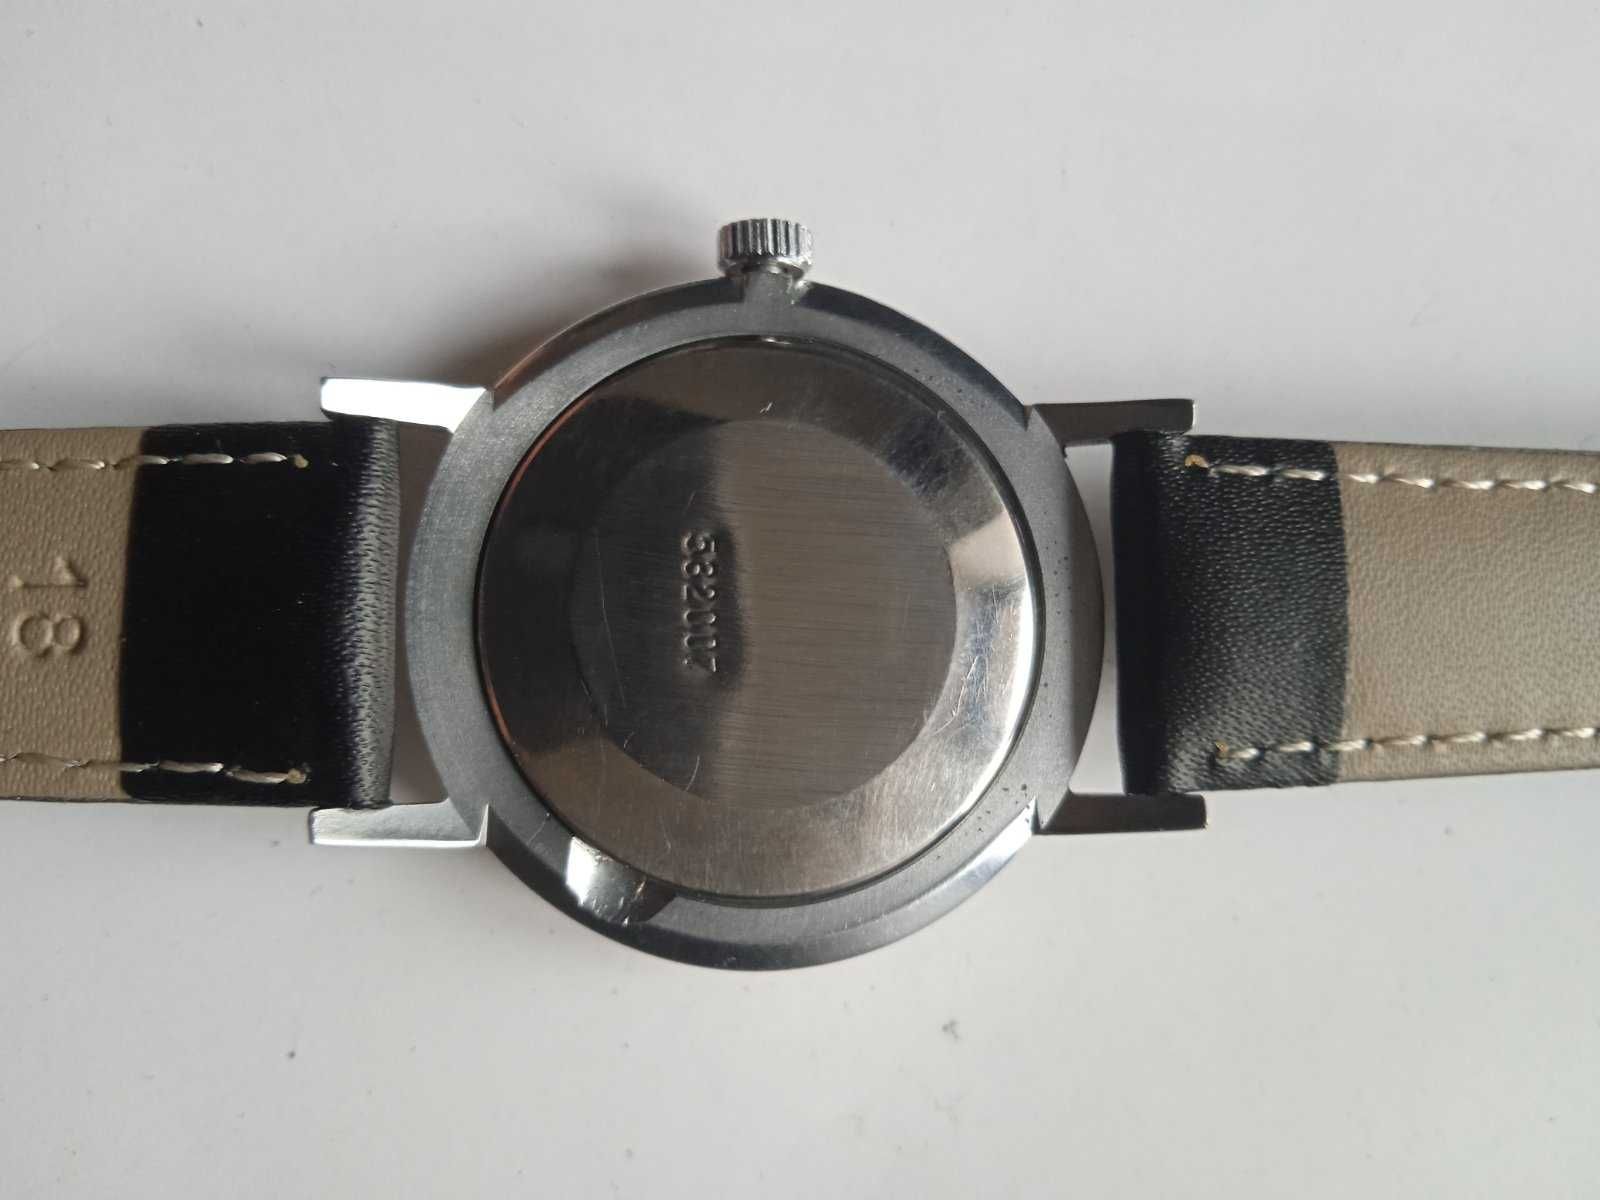 Zegarek Poljot Gagarin Limited Edition